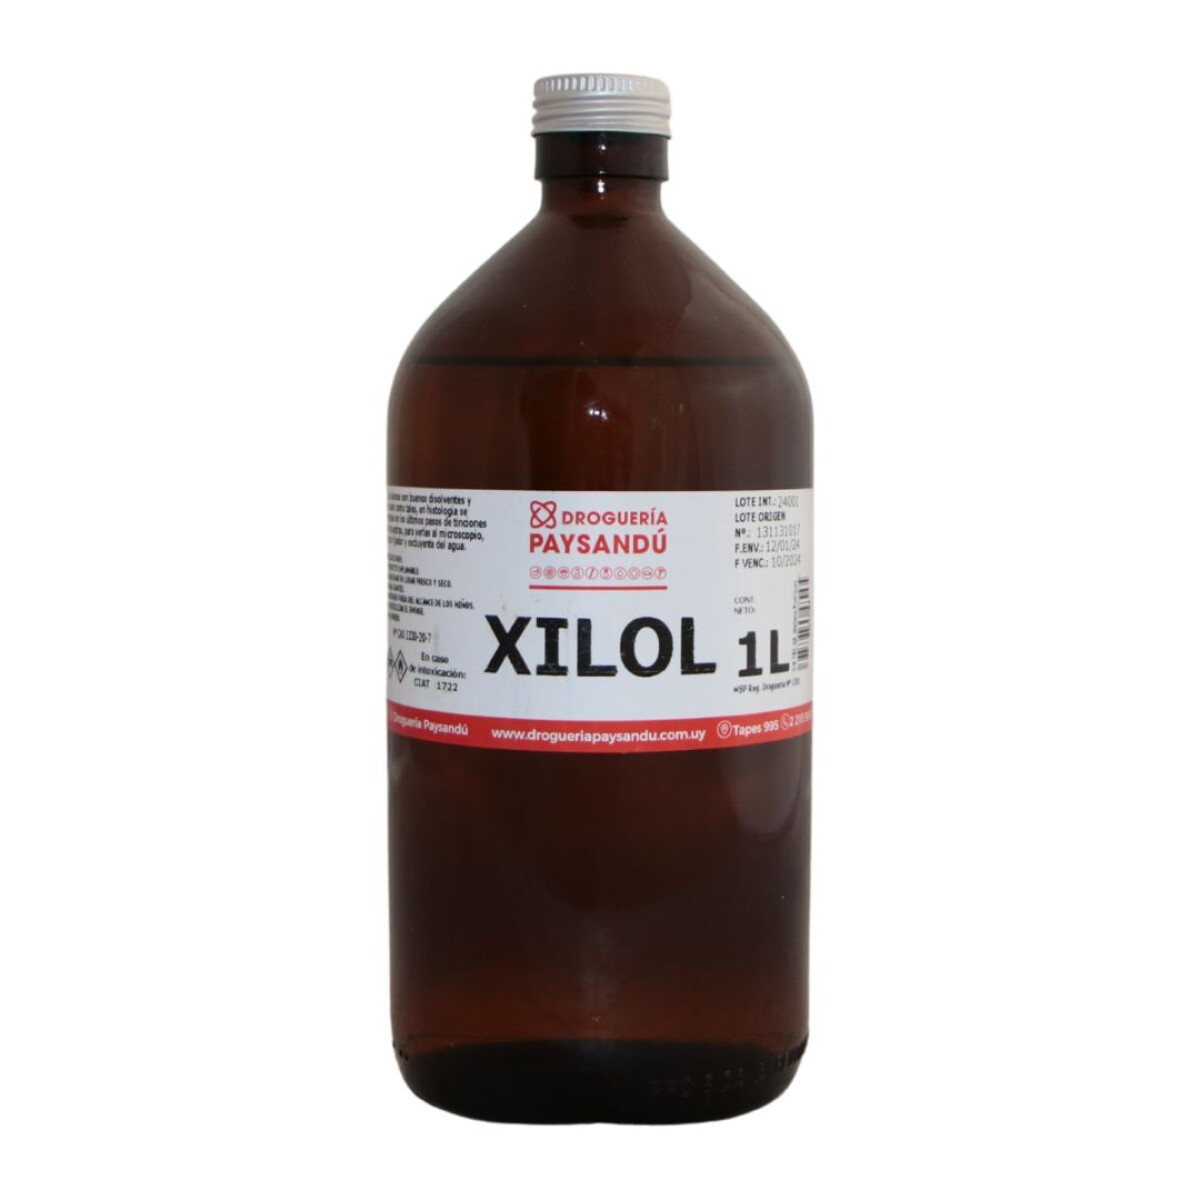 Xilol 1 L - Uso comercial 